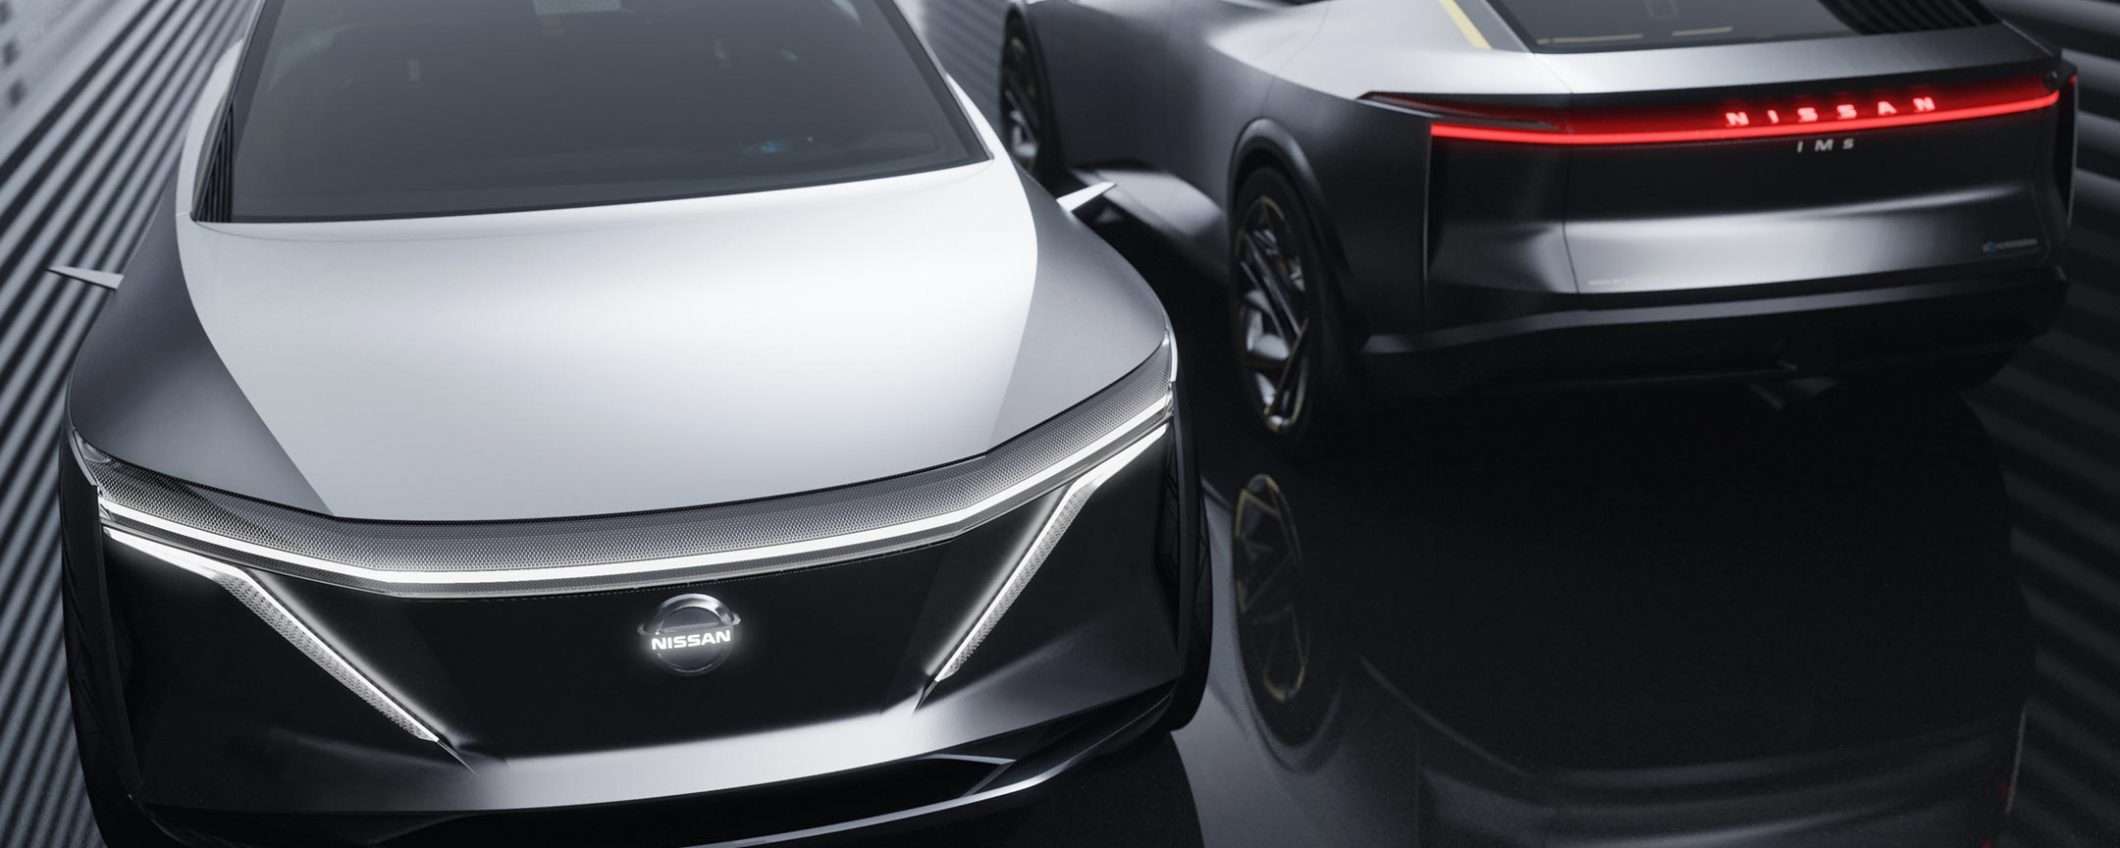 IMs è la concept car elettrica e autonoma di Nissan